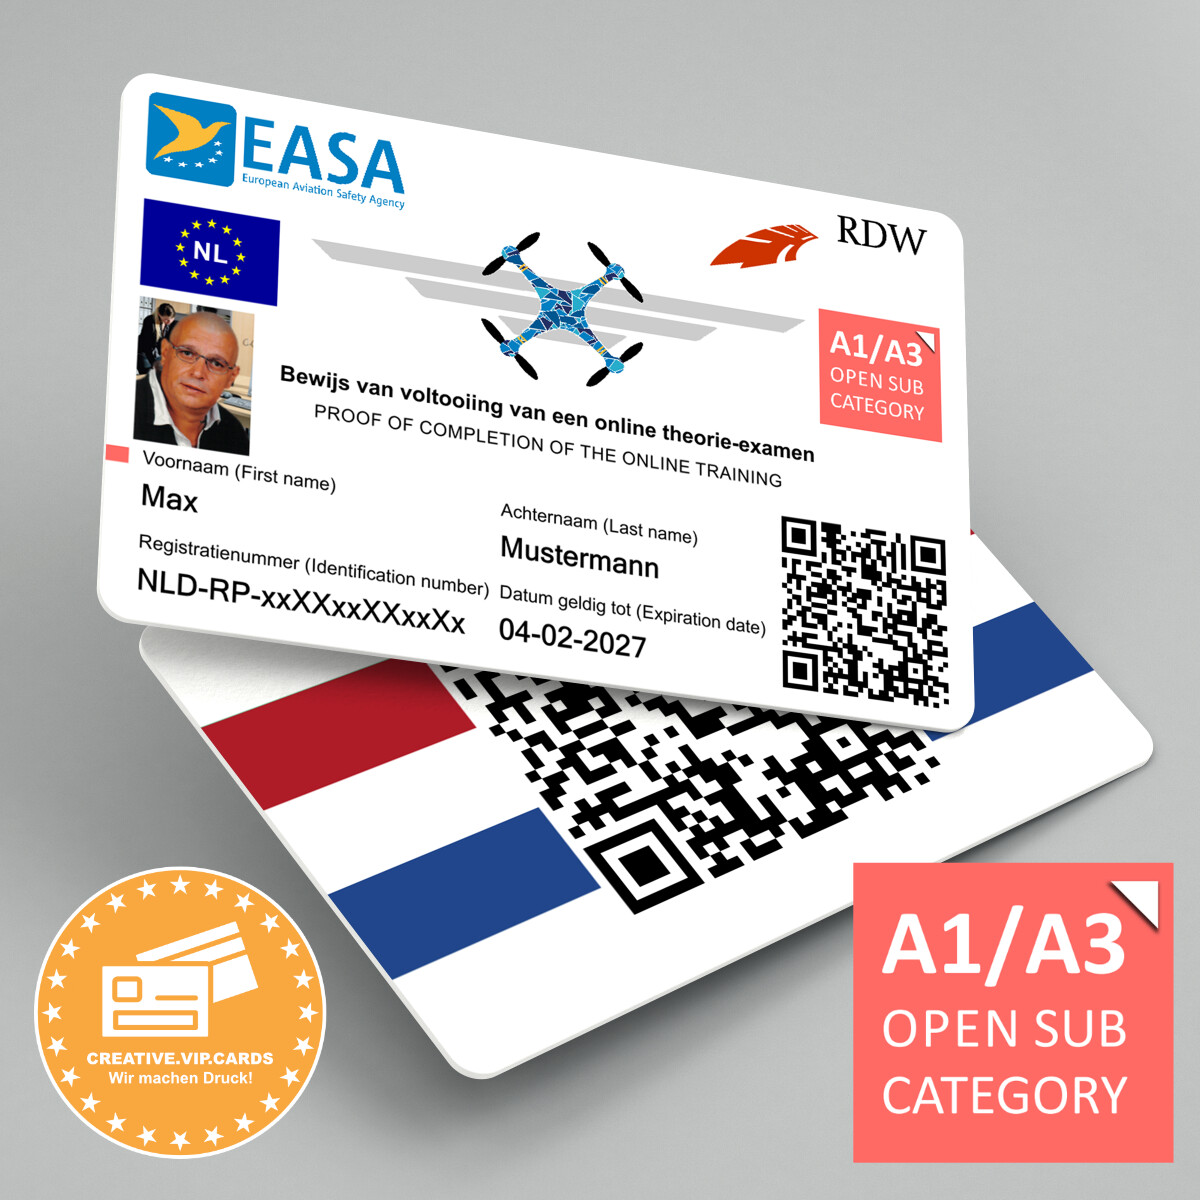 EU - Drohnenführerschein (NL) A1/A3 im Kreditkartenformat